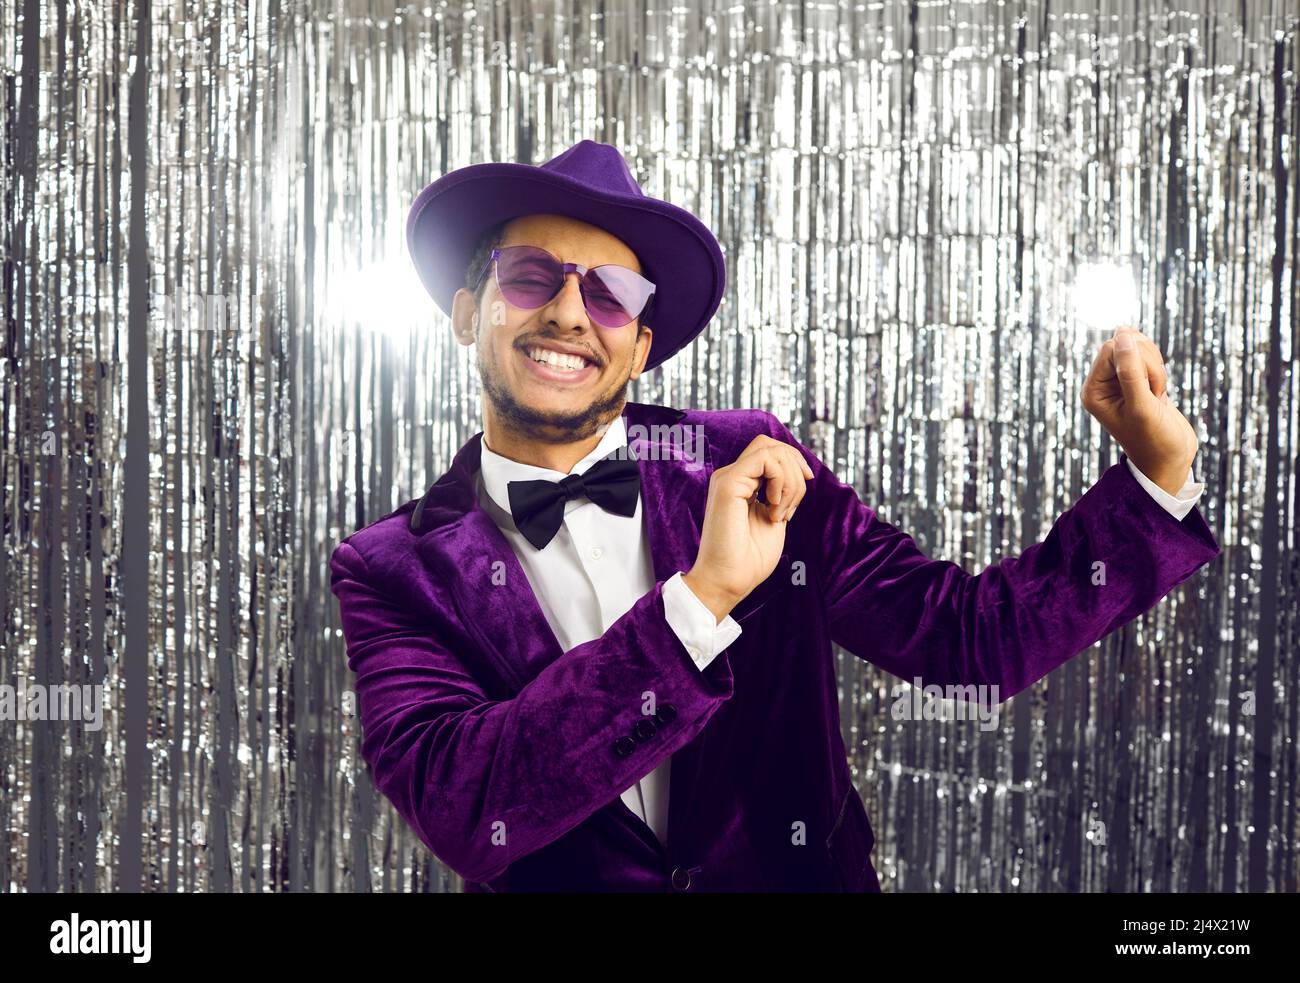 Fröhlicher, lustiger junger Mann mit violetter Jacke, Hut und Sonnenbrille, der auf der Party tanzt Stockfoto